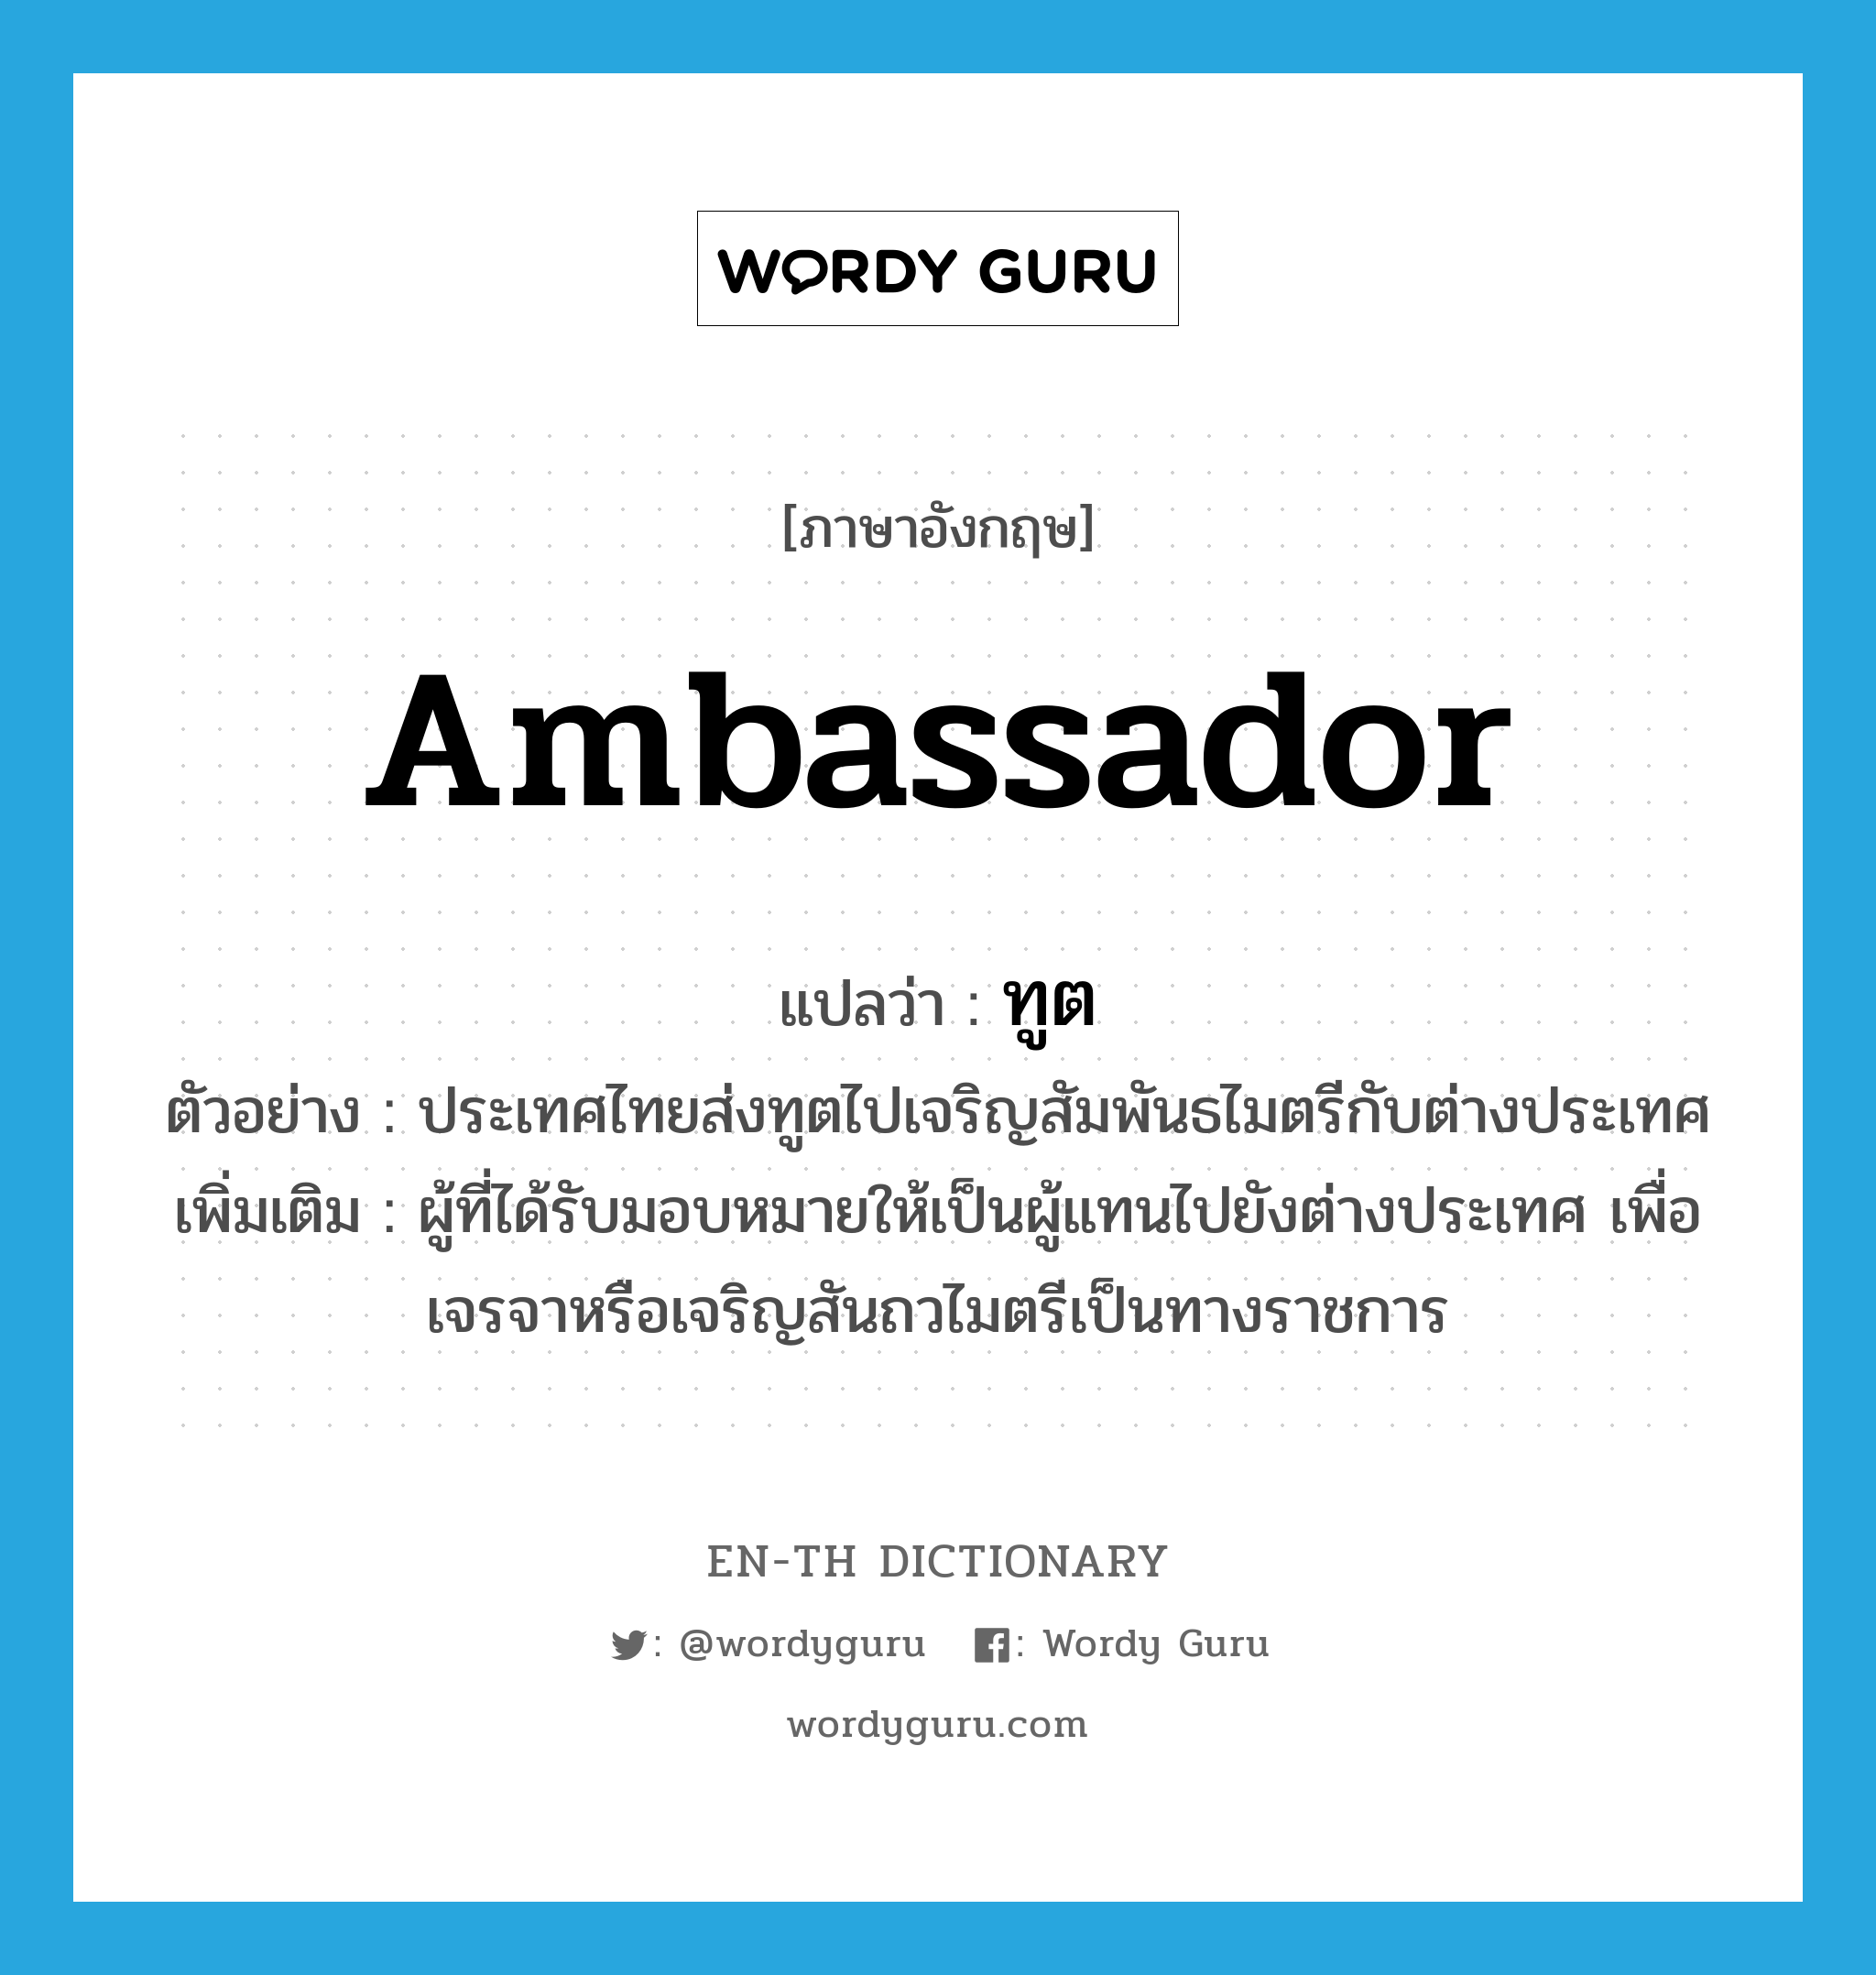 ambassador แปลว่า?, คำศัพท์ภาษาอังกฤษ ambassador แปลว่า ทูต ประเภท N ตัวอย่าง ประเทศไทยส่งทูตไปเจริญสัมพันธไมตรีกับต่างประเทศ เพิ่มเติม ผู้ที่ได้รับมอบหมายให้เป็นผู้แทนไปยังต่างประเทศ เพื่อเจรจาหรือเจริญสันถวไมตรีเป็นทางราชการ หมวด N